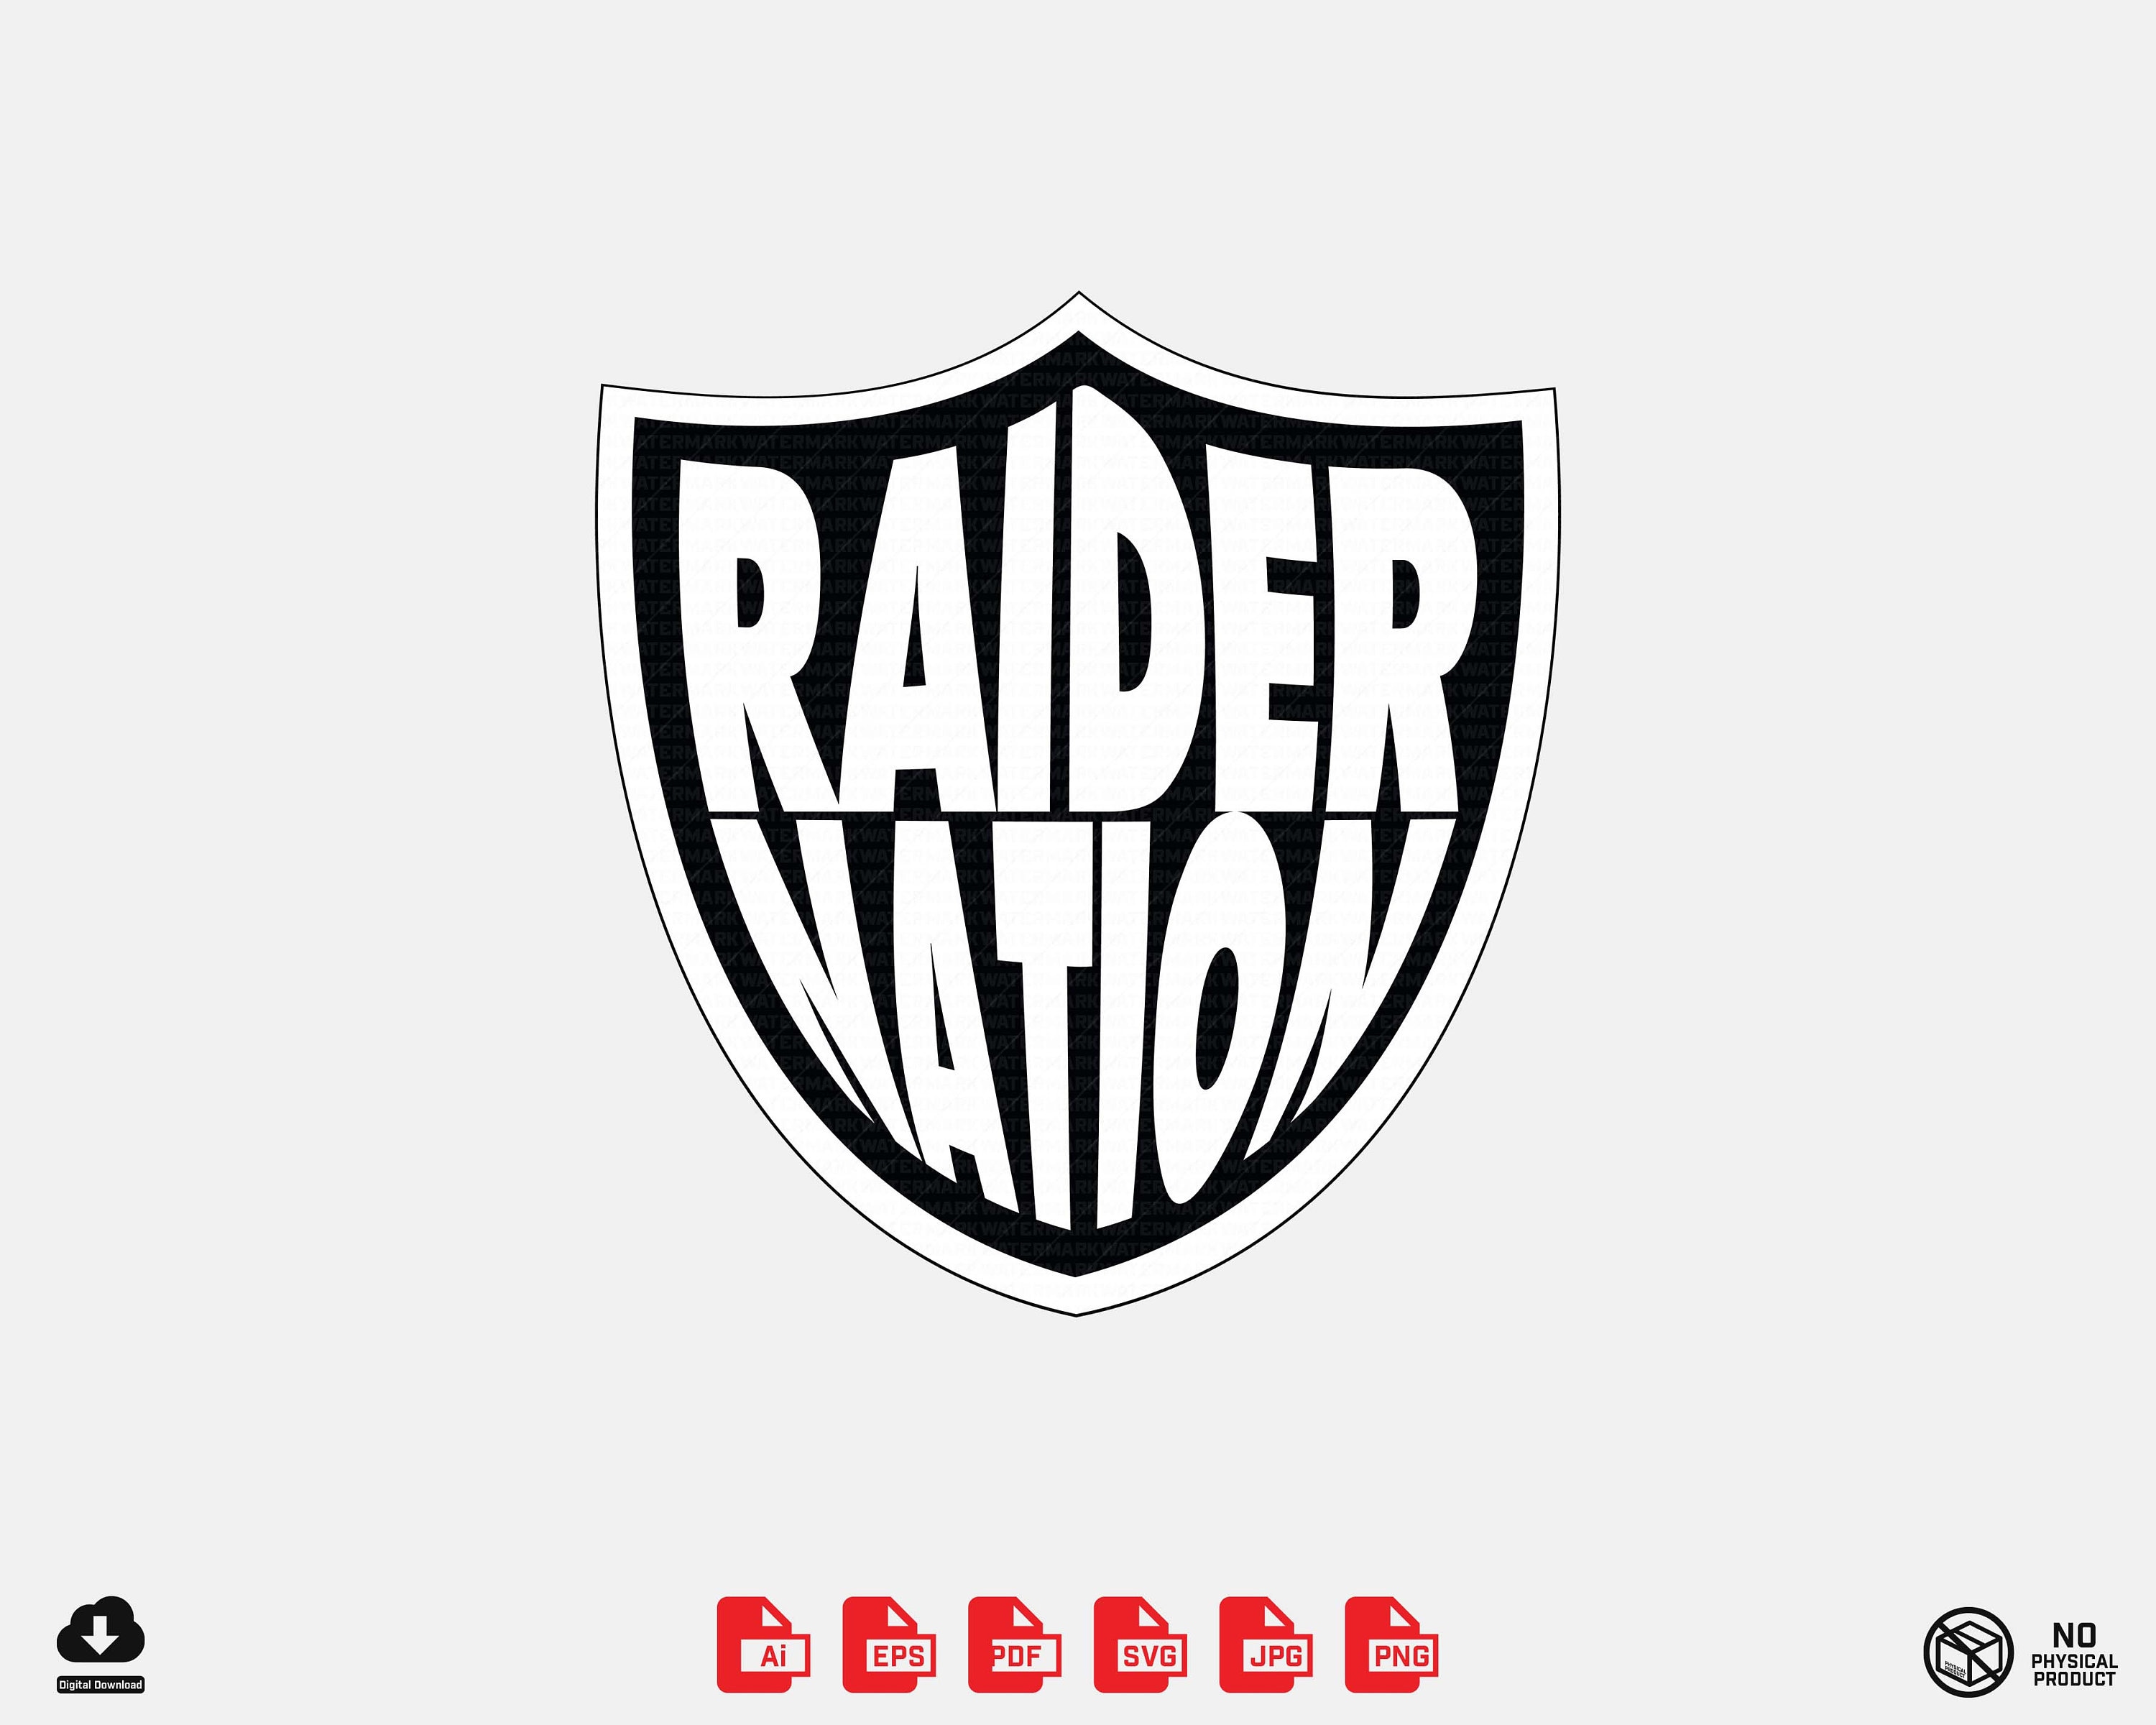 Las Vegas Raiders Raider Nation Christmas Ornament Custom Name - Teespix -  Store Fashion LLC